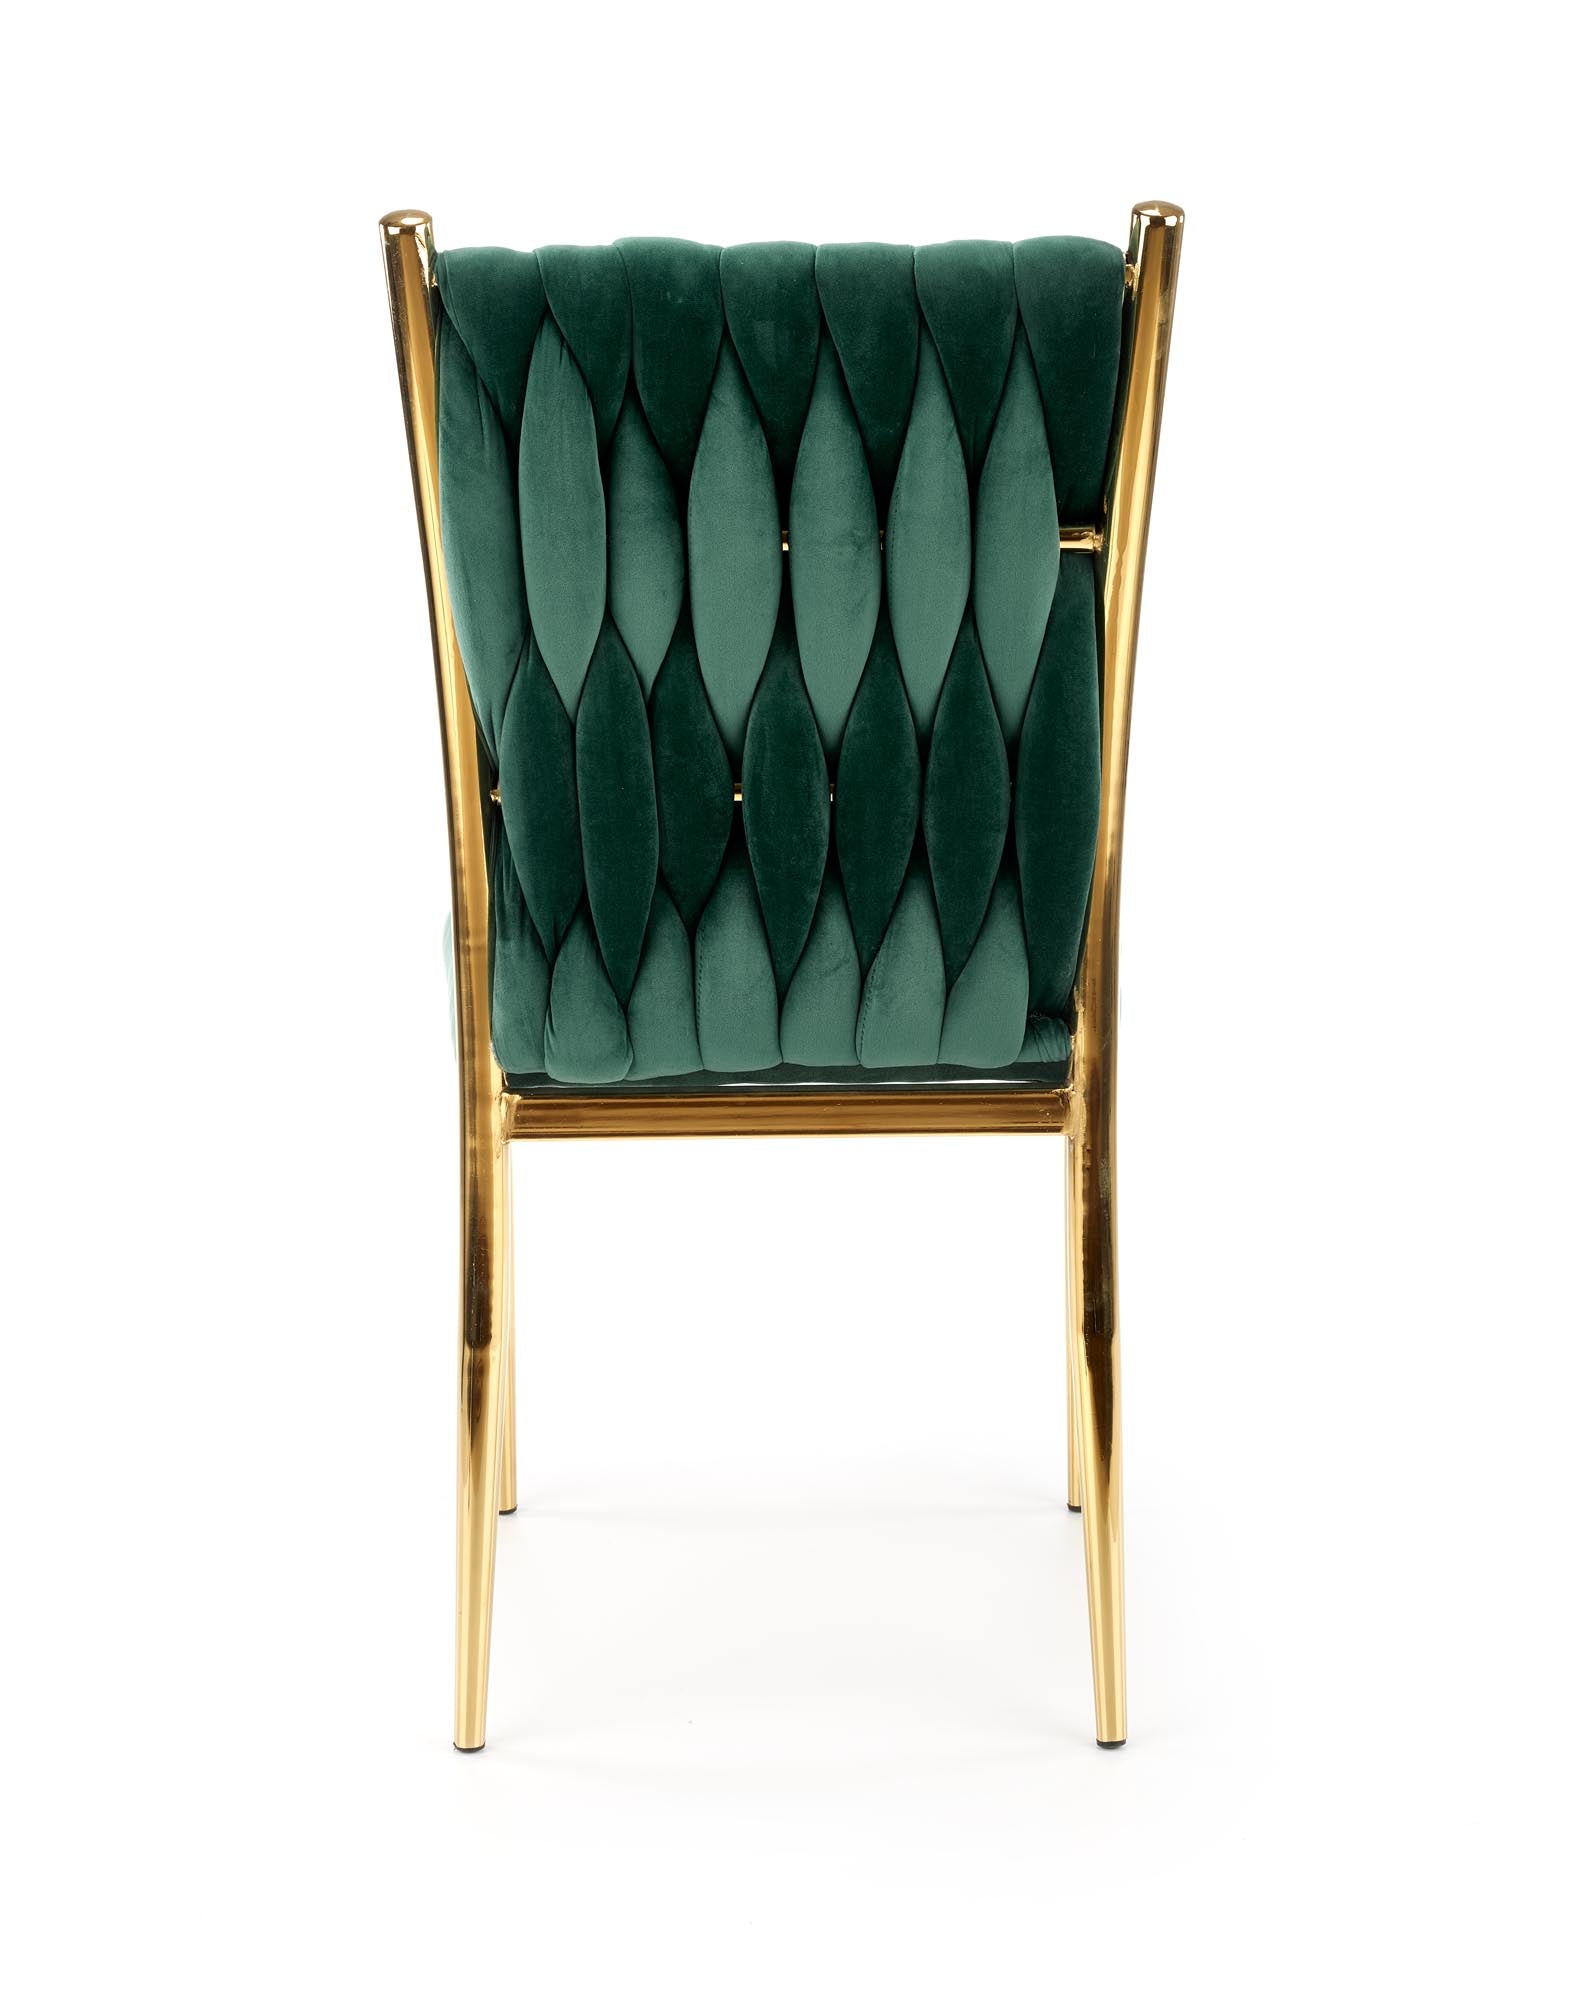 Gibson szék (sötétzöld) - Marco Mobili Bútoráruház - Szék